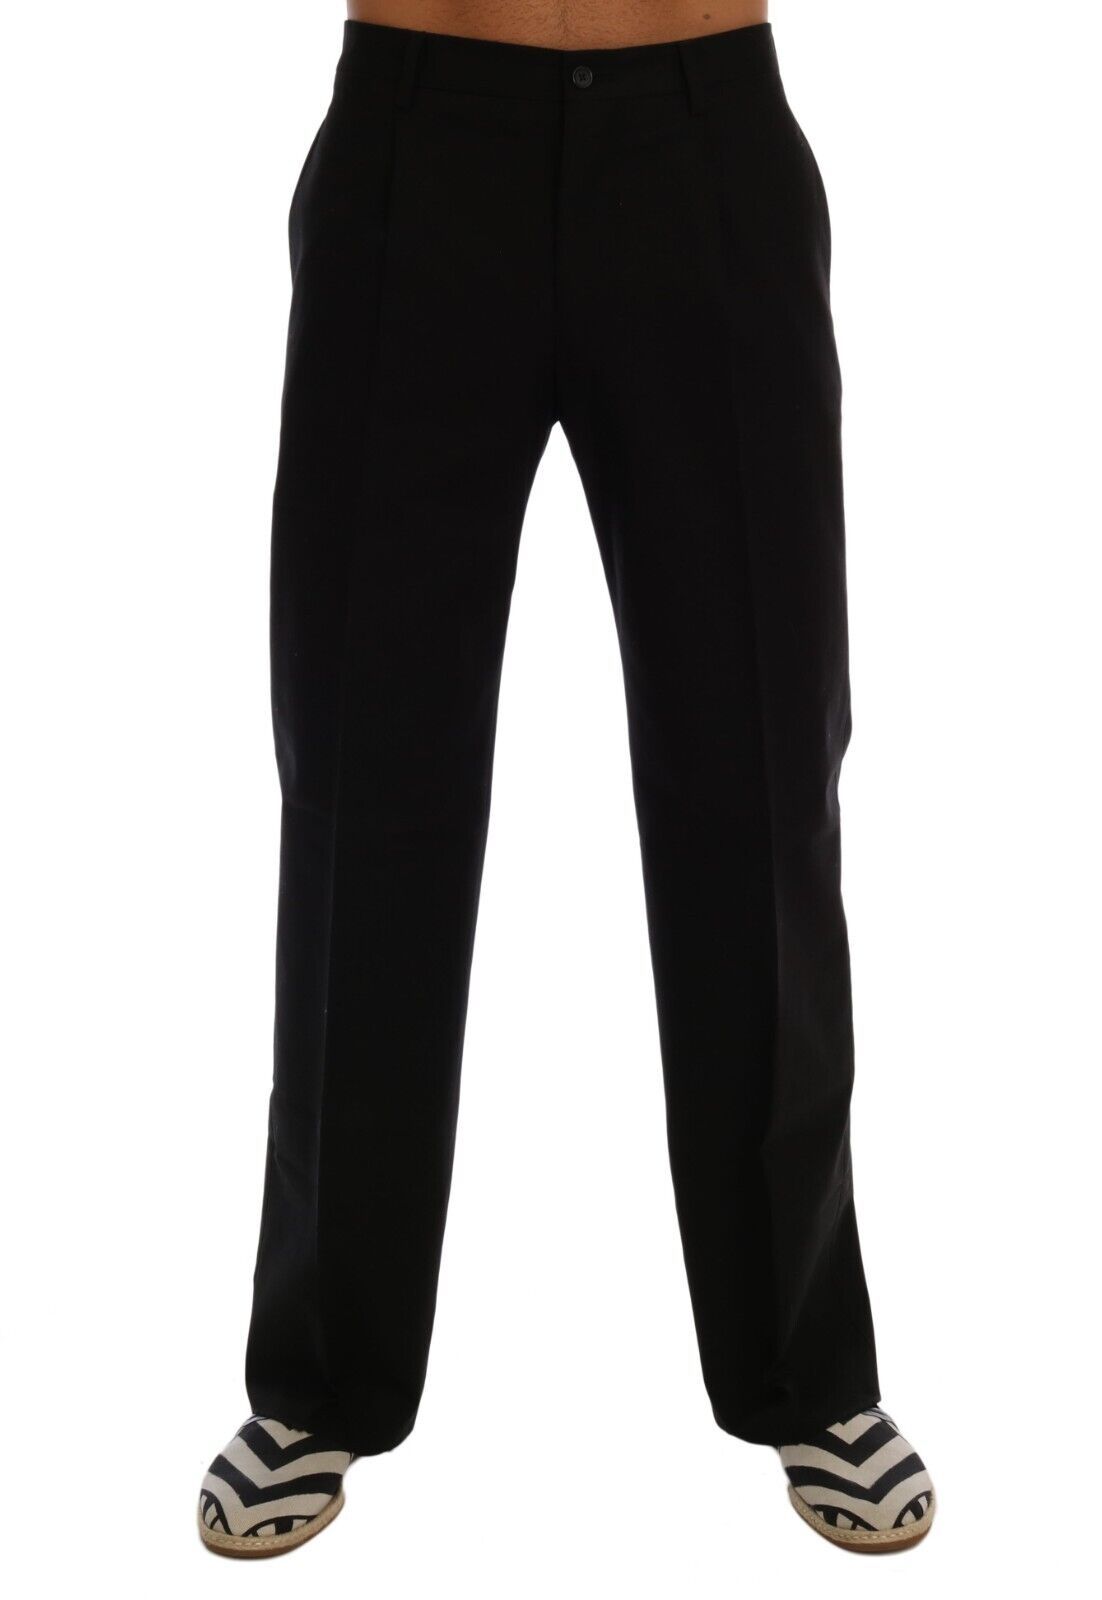 Dolce & Gabbana Elegant Black Cotton Stretch Pants